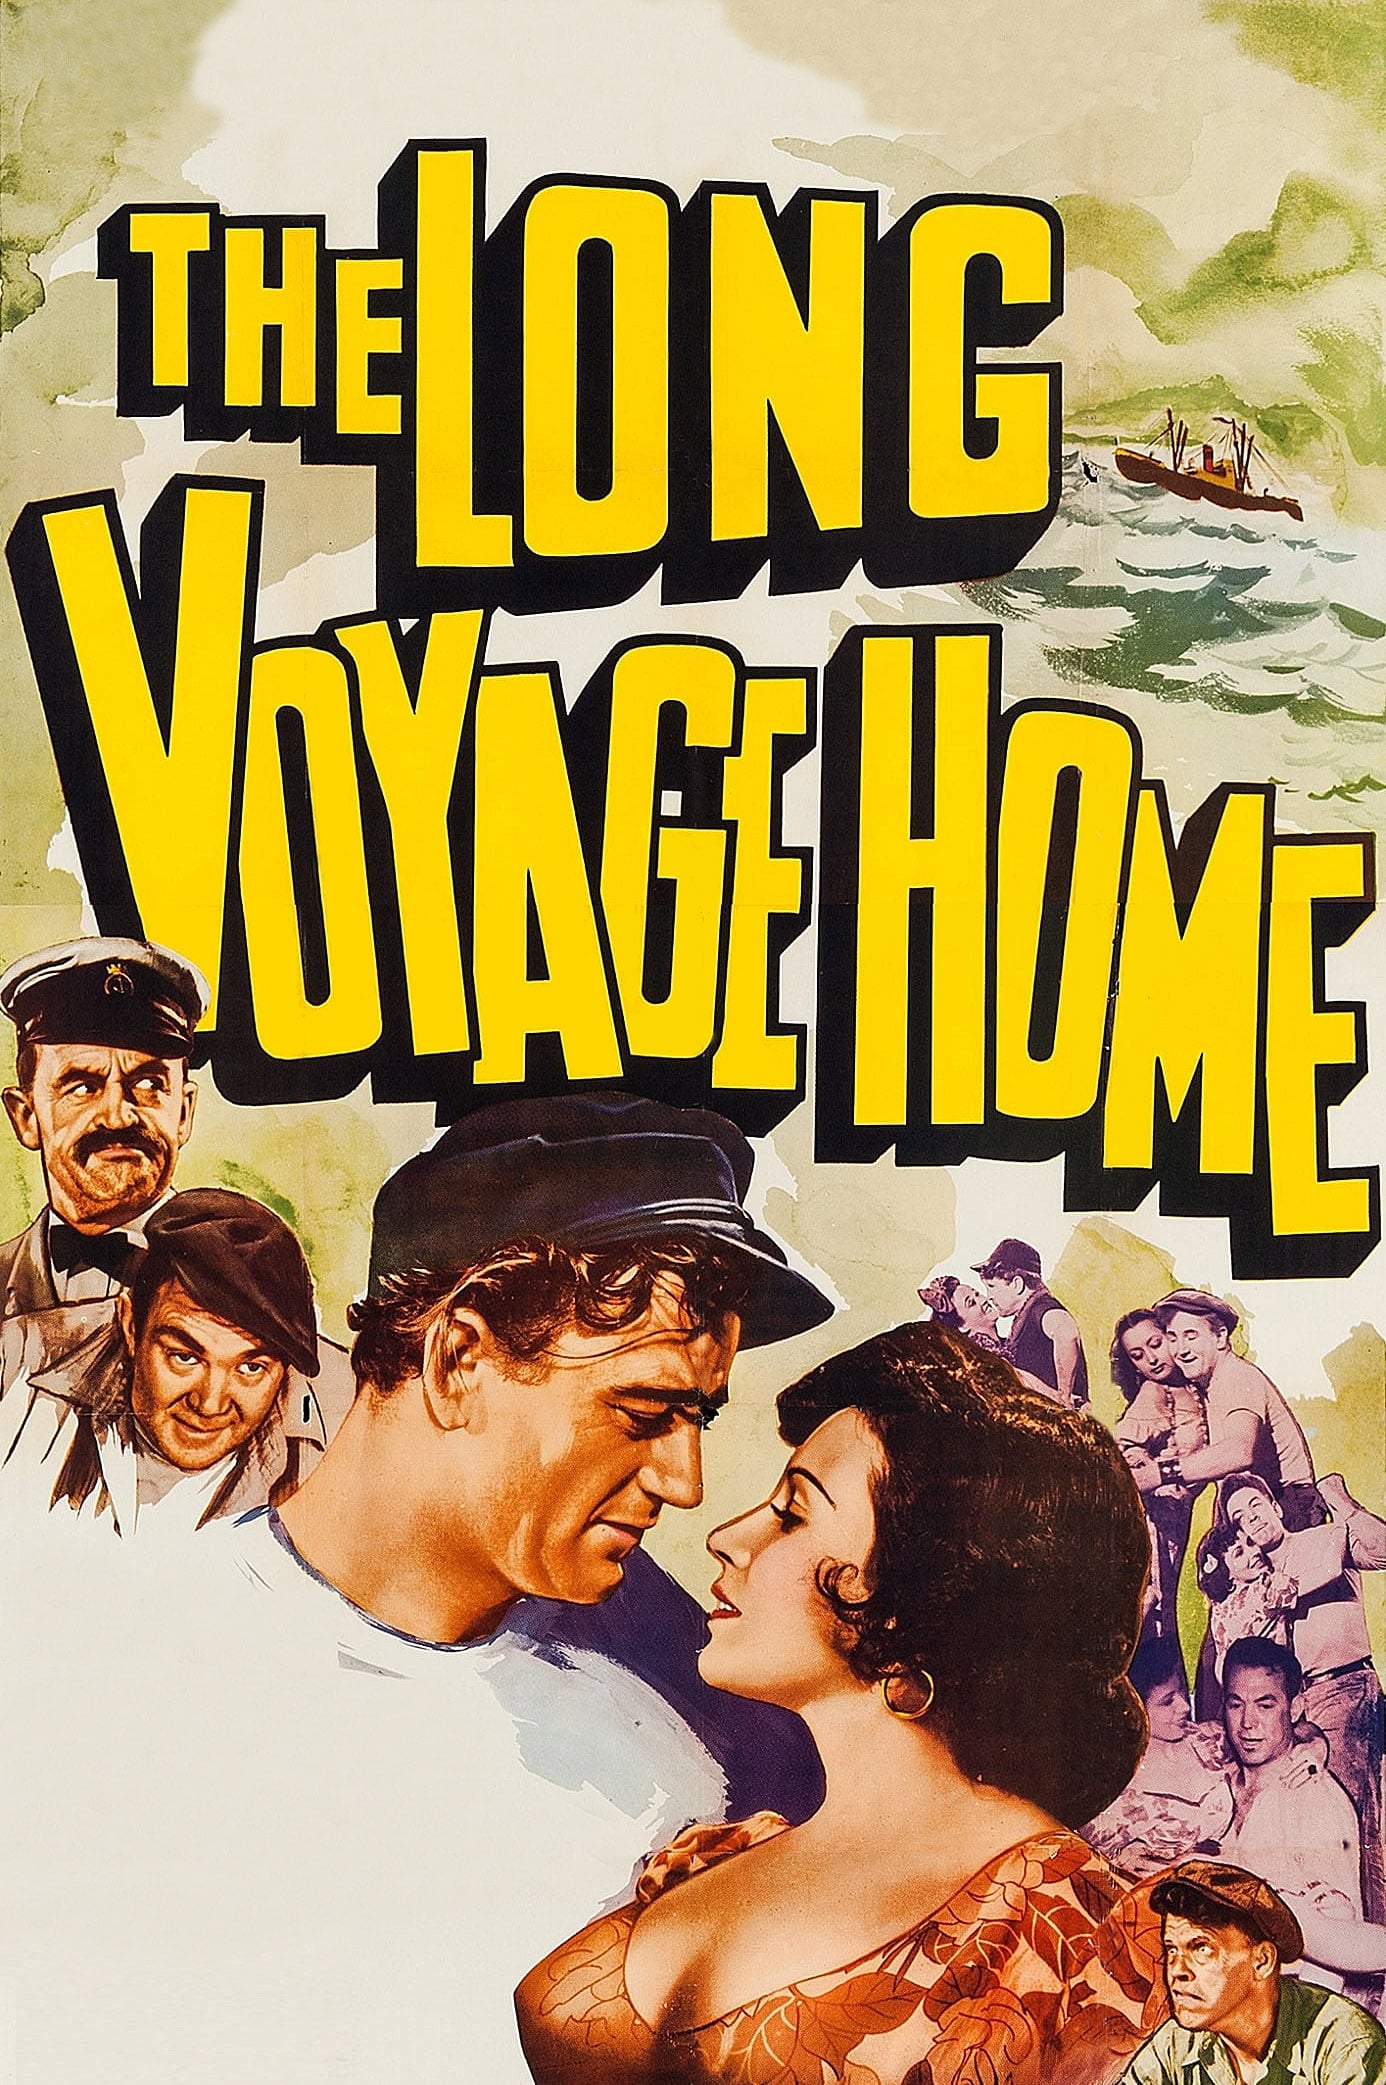 A Longa Viagem de Volta (1940)